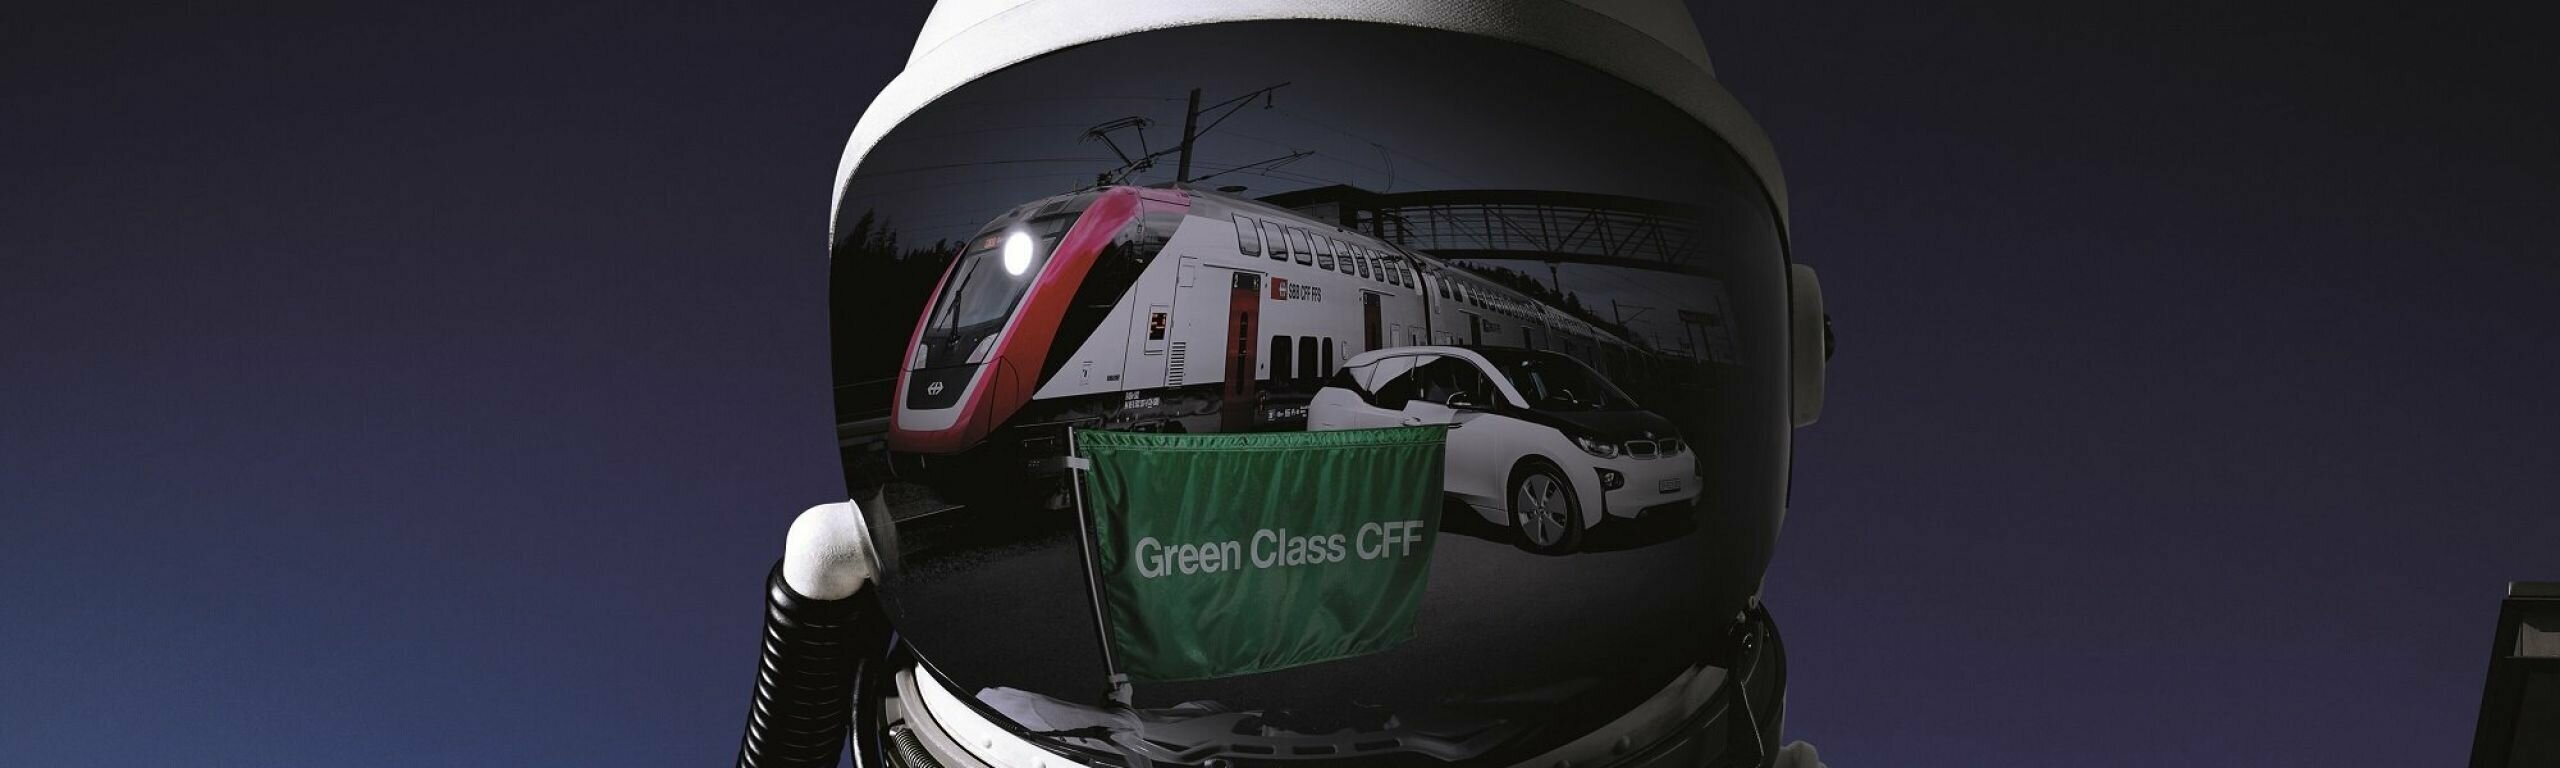 Green Class CFF